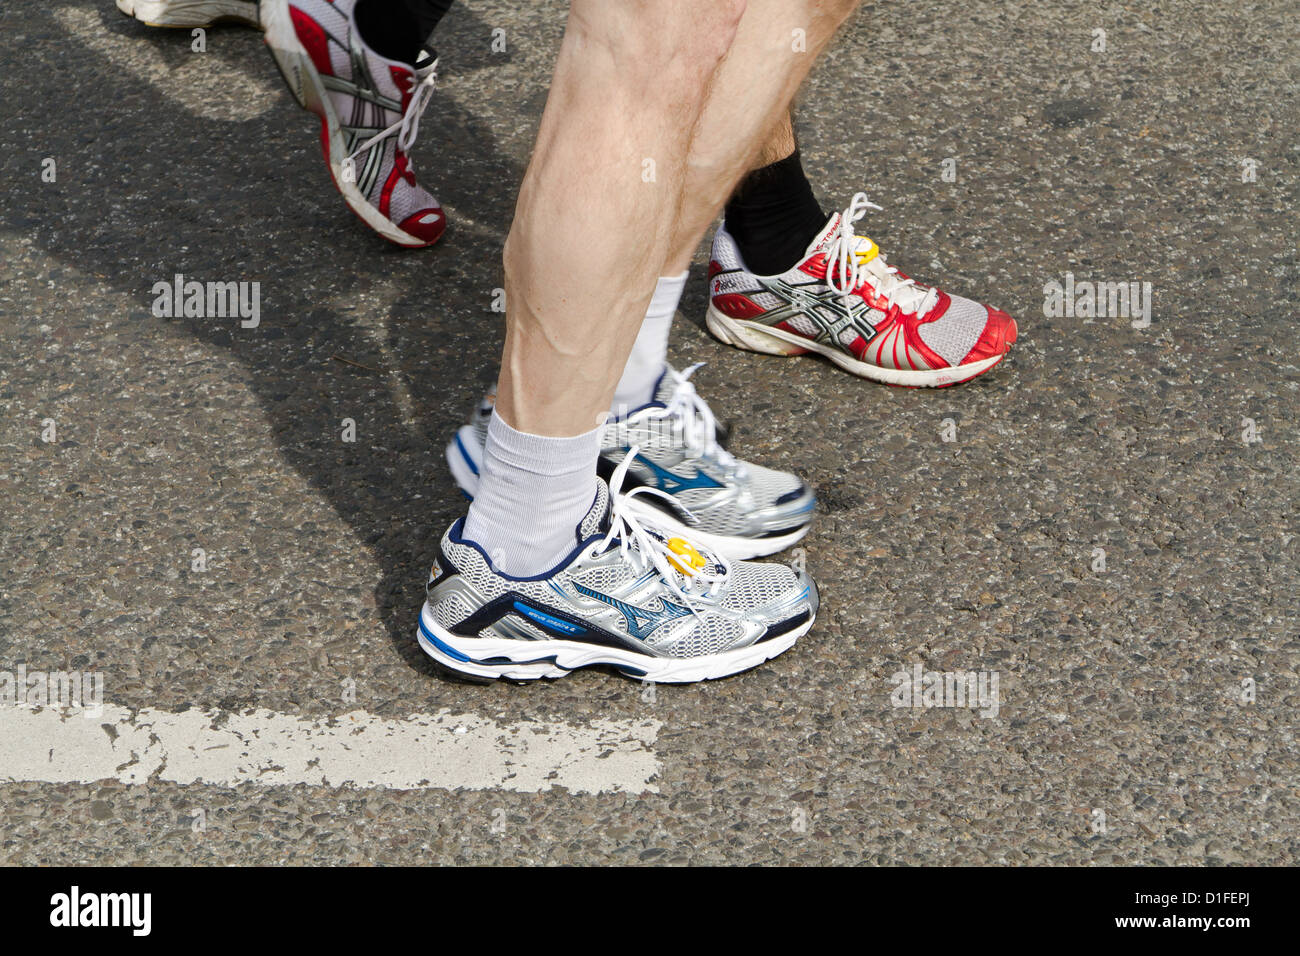 half marathon running shoes